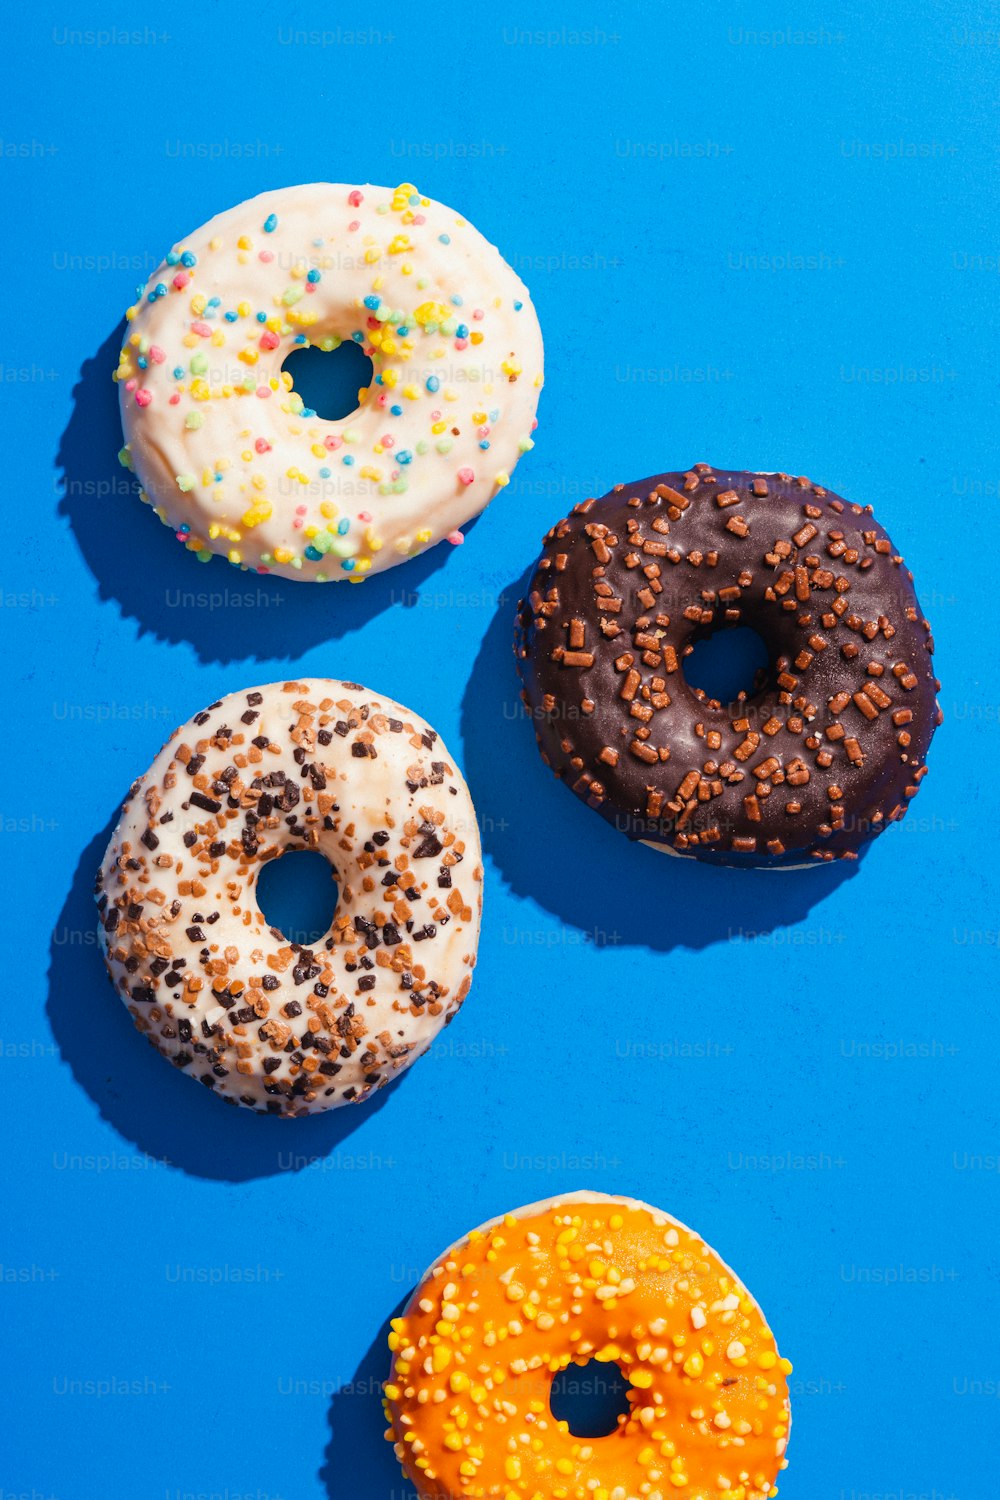 파란색 표면 위에 앉아있는 세 개의 도넛 그룹